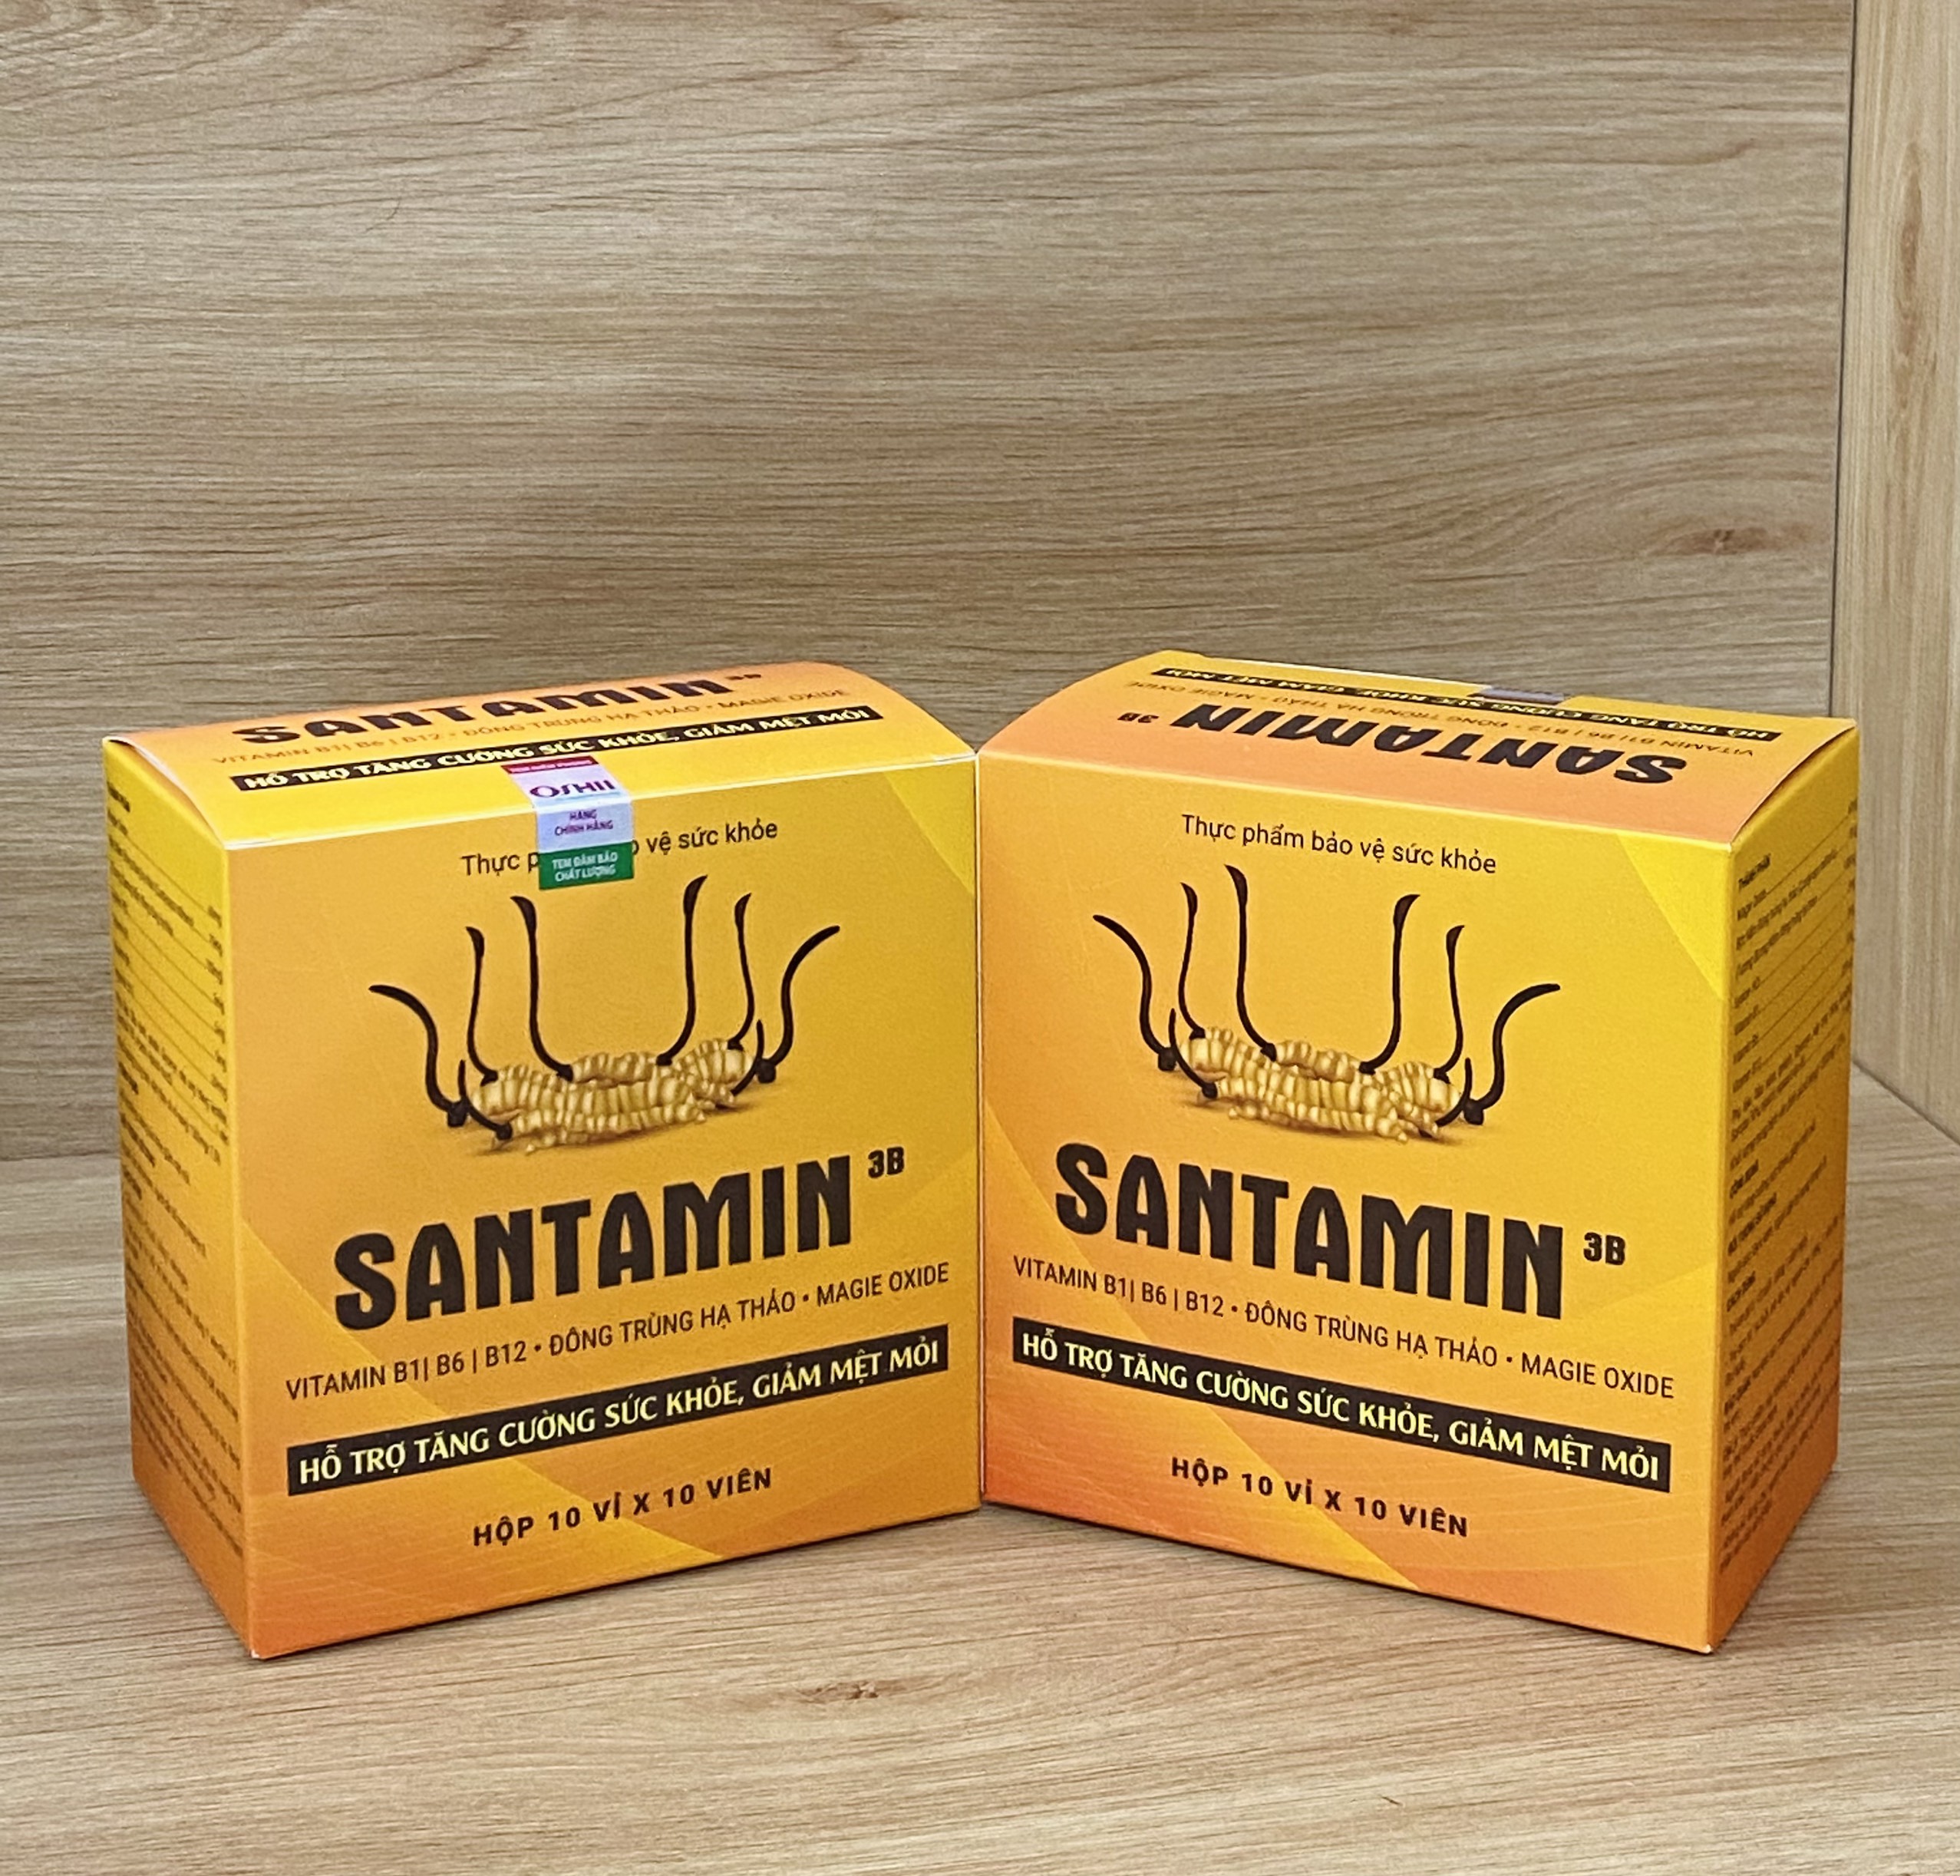 Viên Uống Hỗ Trợ Tăng Cường Sức Khỏe Giảm Mệt Mỏi Santamin 3B Santafa Hộp 100 viên